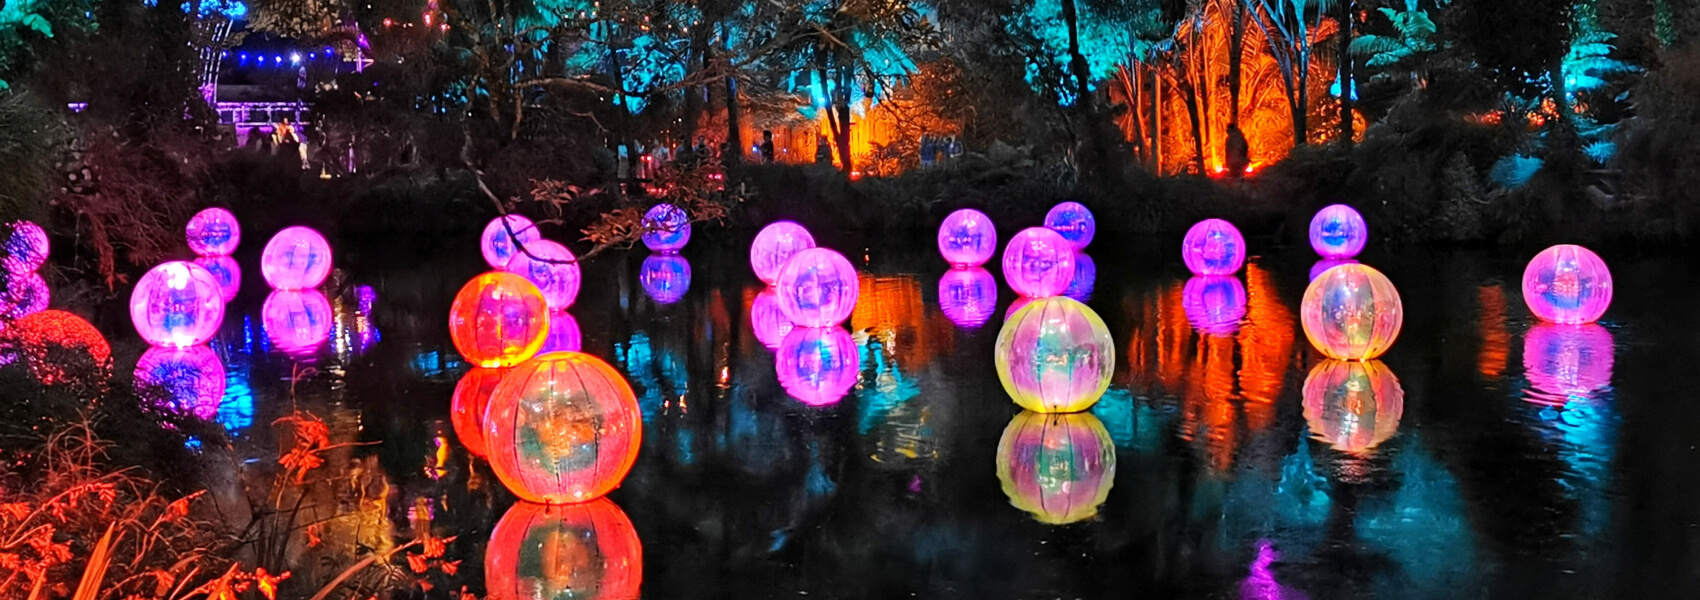 bolas hinchables con luces de colores en el interior flotando en el agua